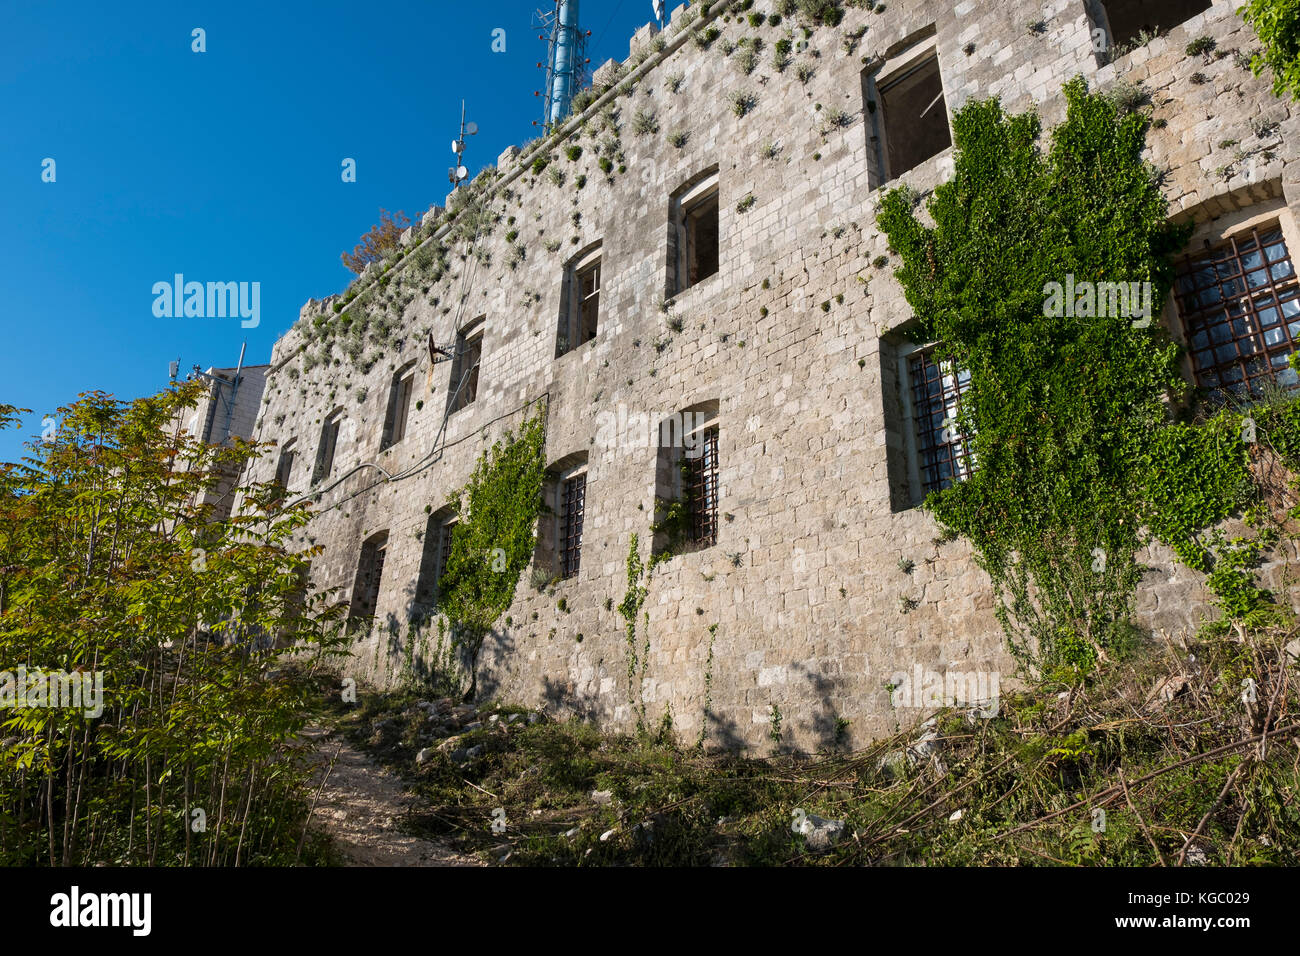 Fort imperial. un fort napoléonien partie intégrante dans la défense de Dubrovnik en 1991 sur le sommet du mont Srd , Dubrovnik, Croatie, Europe Banque D'Images